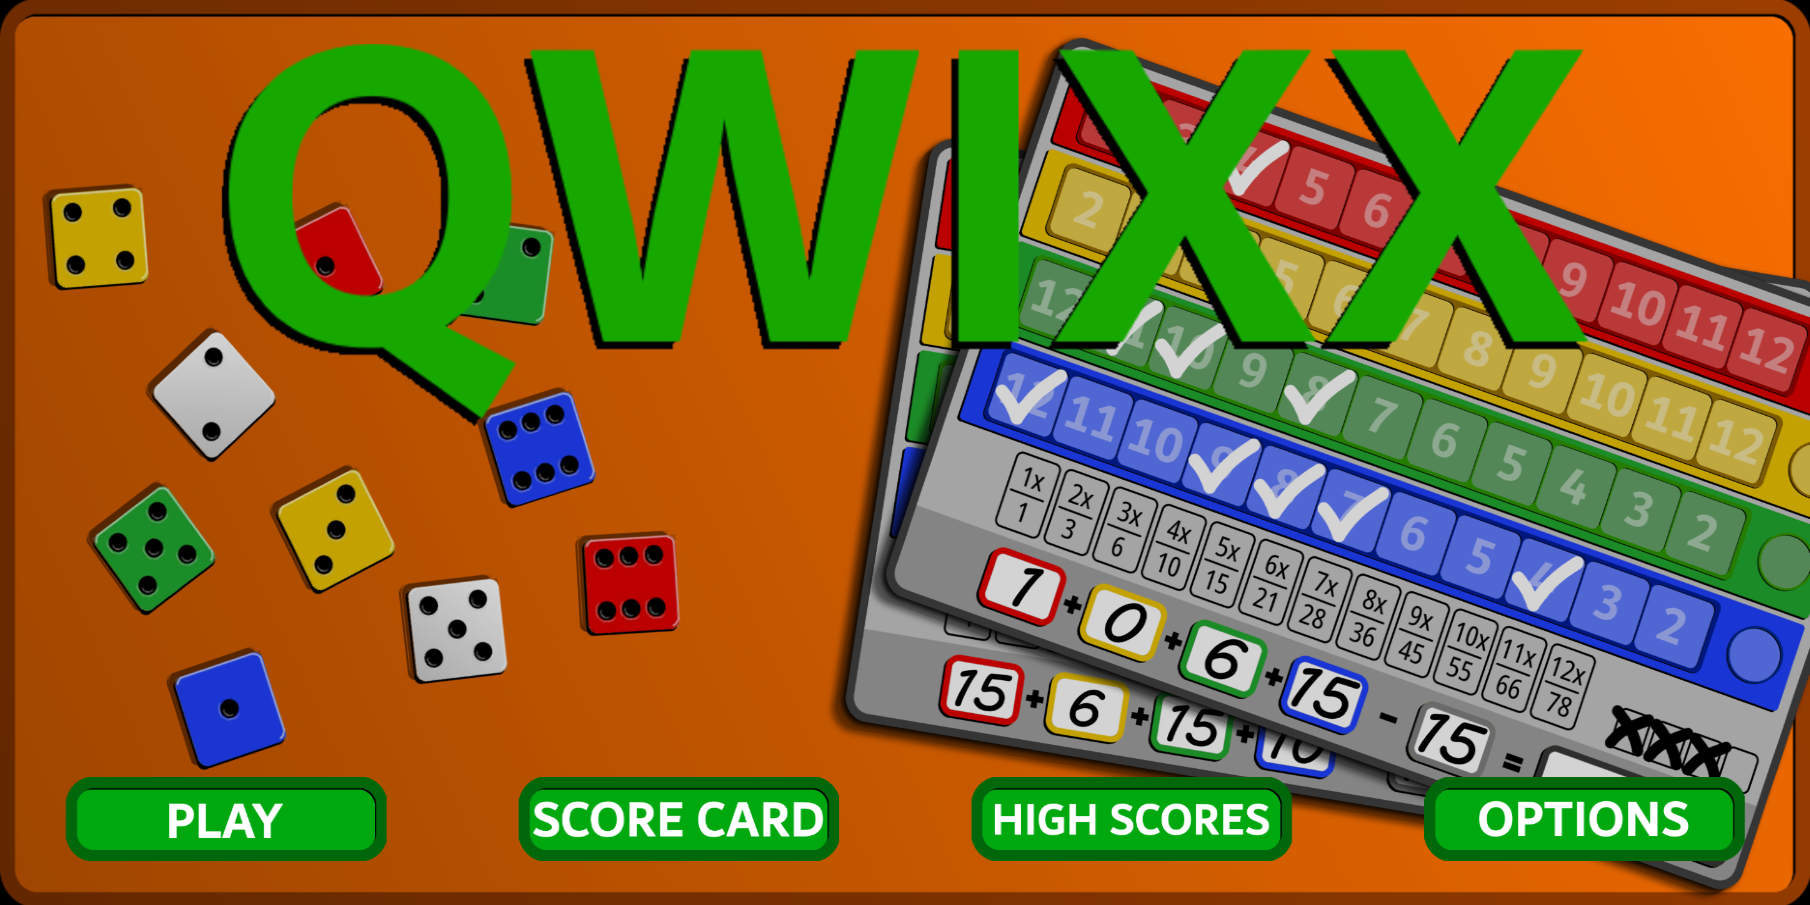 Printable Quixx Score Sheets, Quixx Score Card Download, Quixx